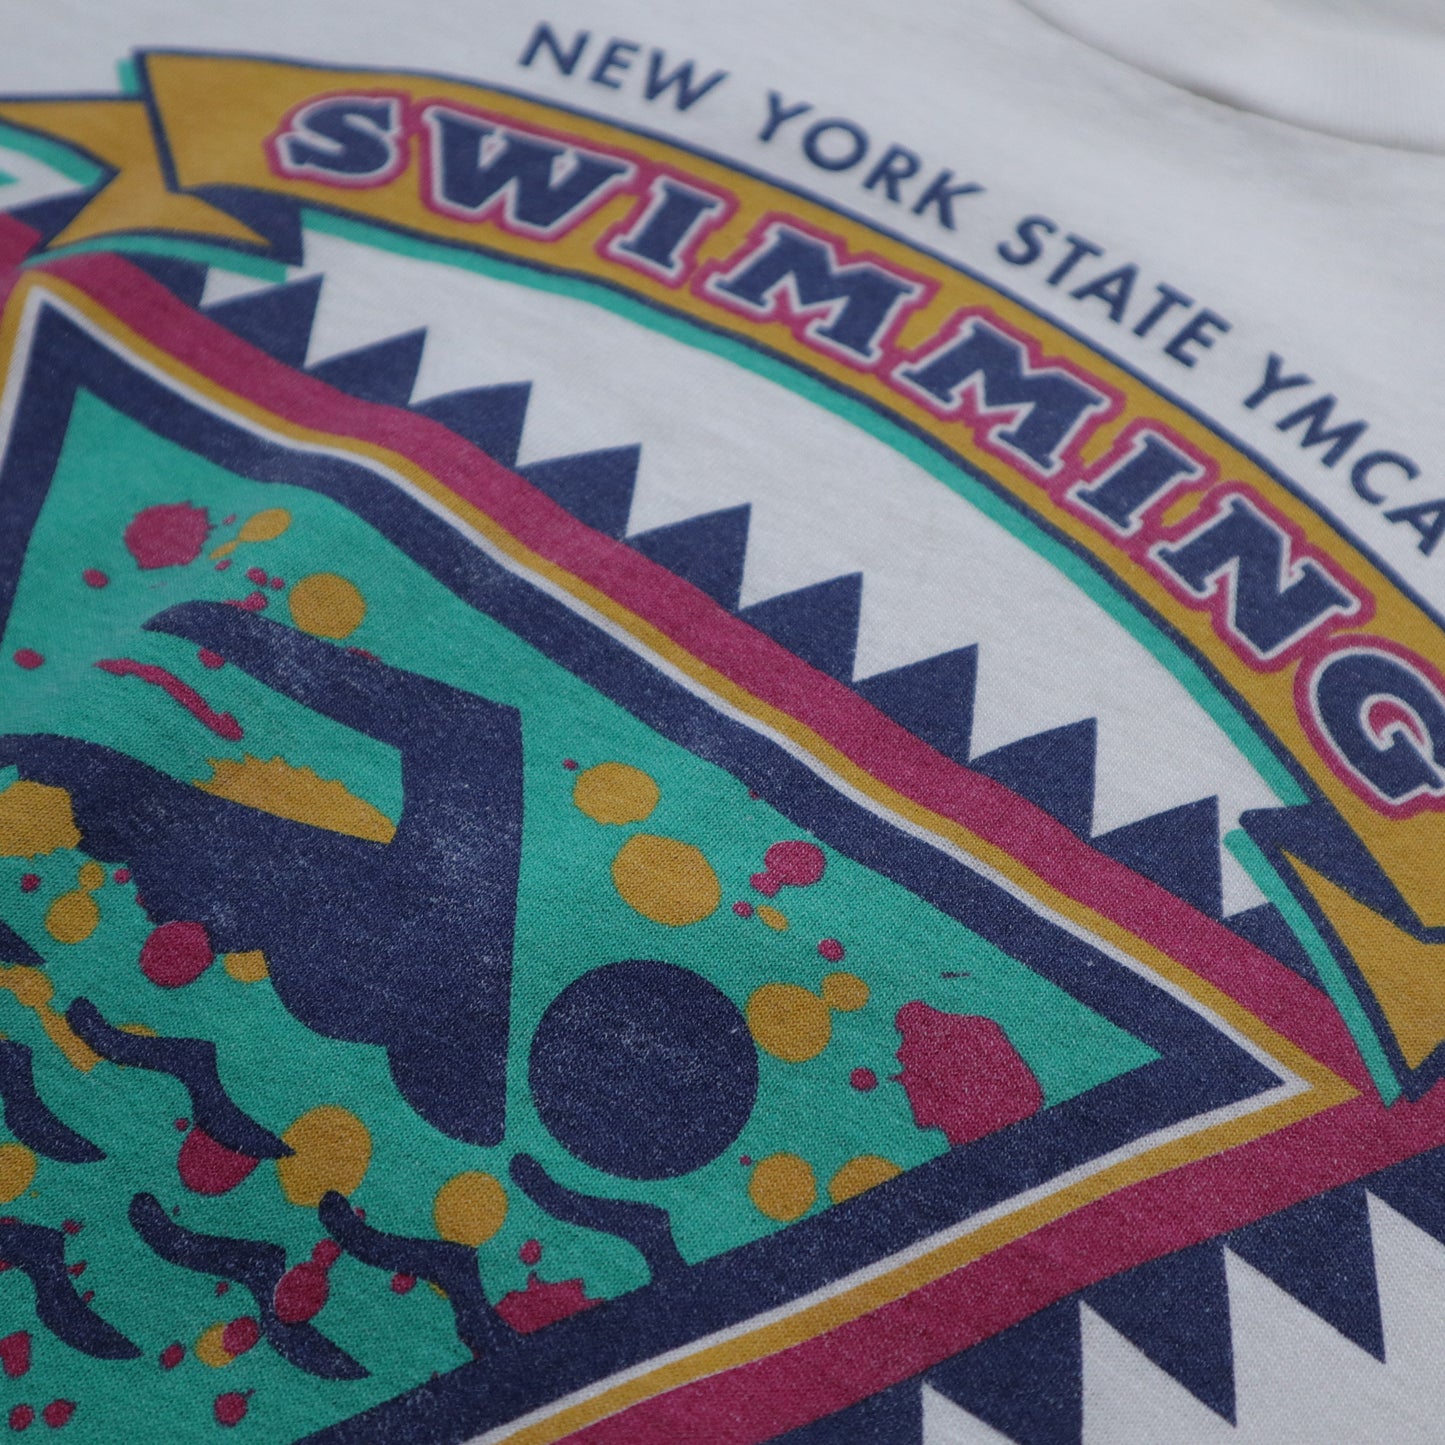 1996 美國製 New York Swimming T-Shirt